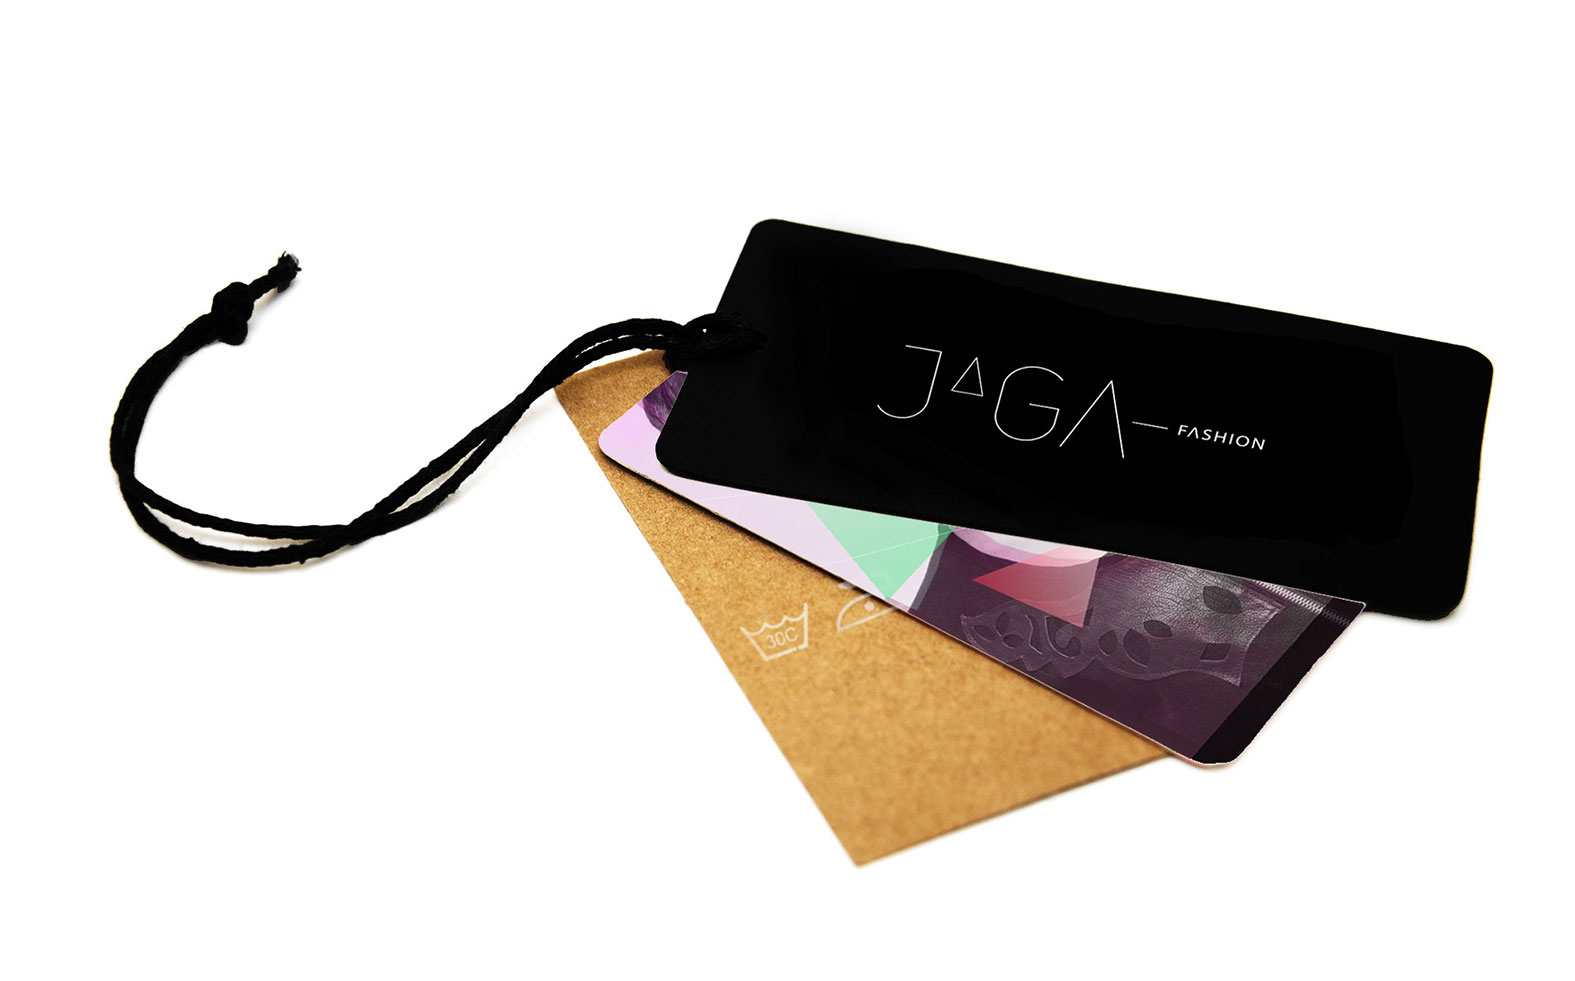 Etiqueta de roupa com design do logótipo para Jaga Fashion